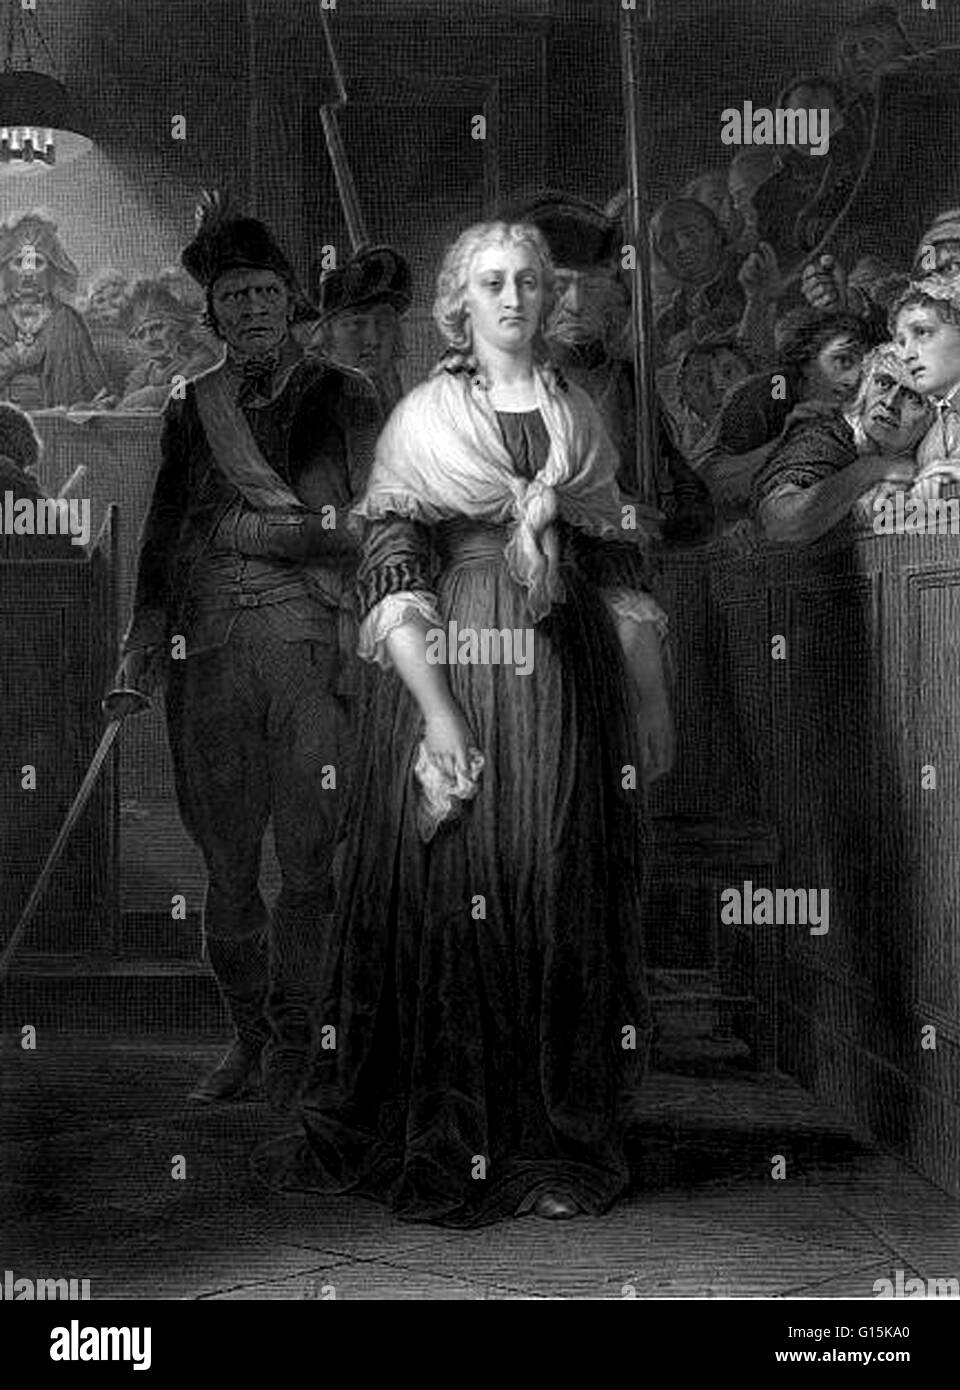 Incisione dal titolo: Maria Antonietta condannato dal Tribunale Rivoluzionario. Maria Antonietta (1755-1793) era un'Arciduchessa d'Austria e la regina di Francia e di Navarra. Lei era il quindicesimo e penultimo figlio di Santa Romana Imperatrice Maria Theres Foto Stock